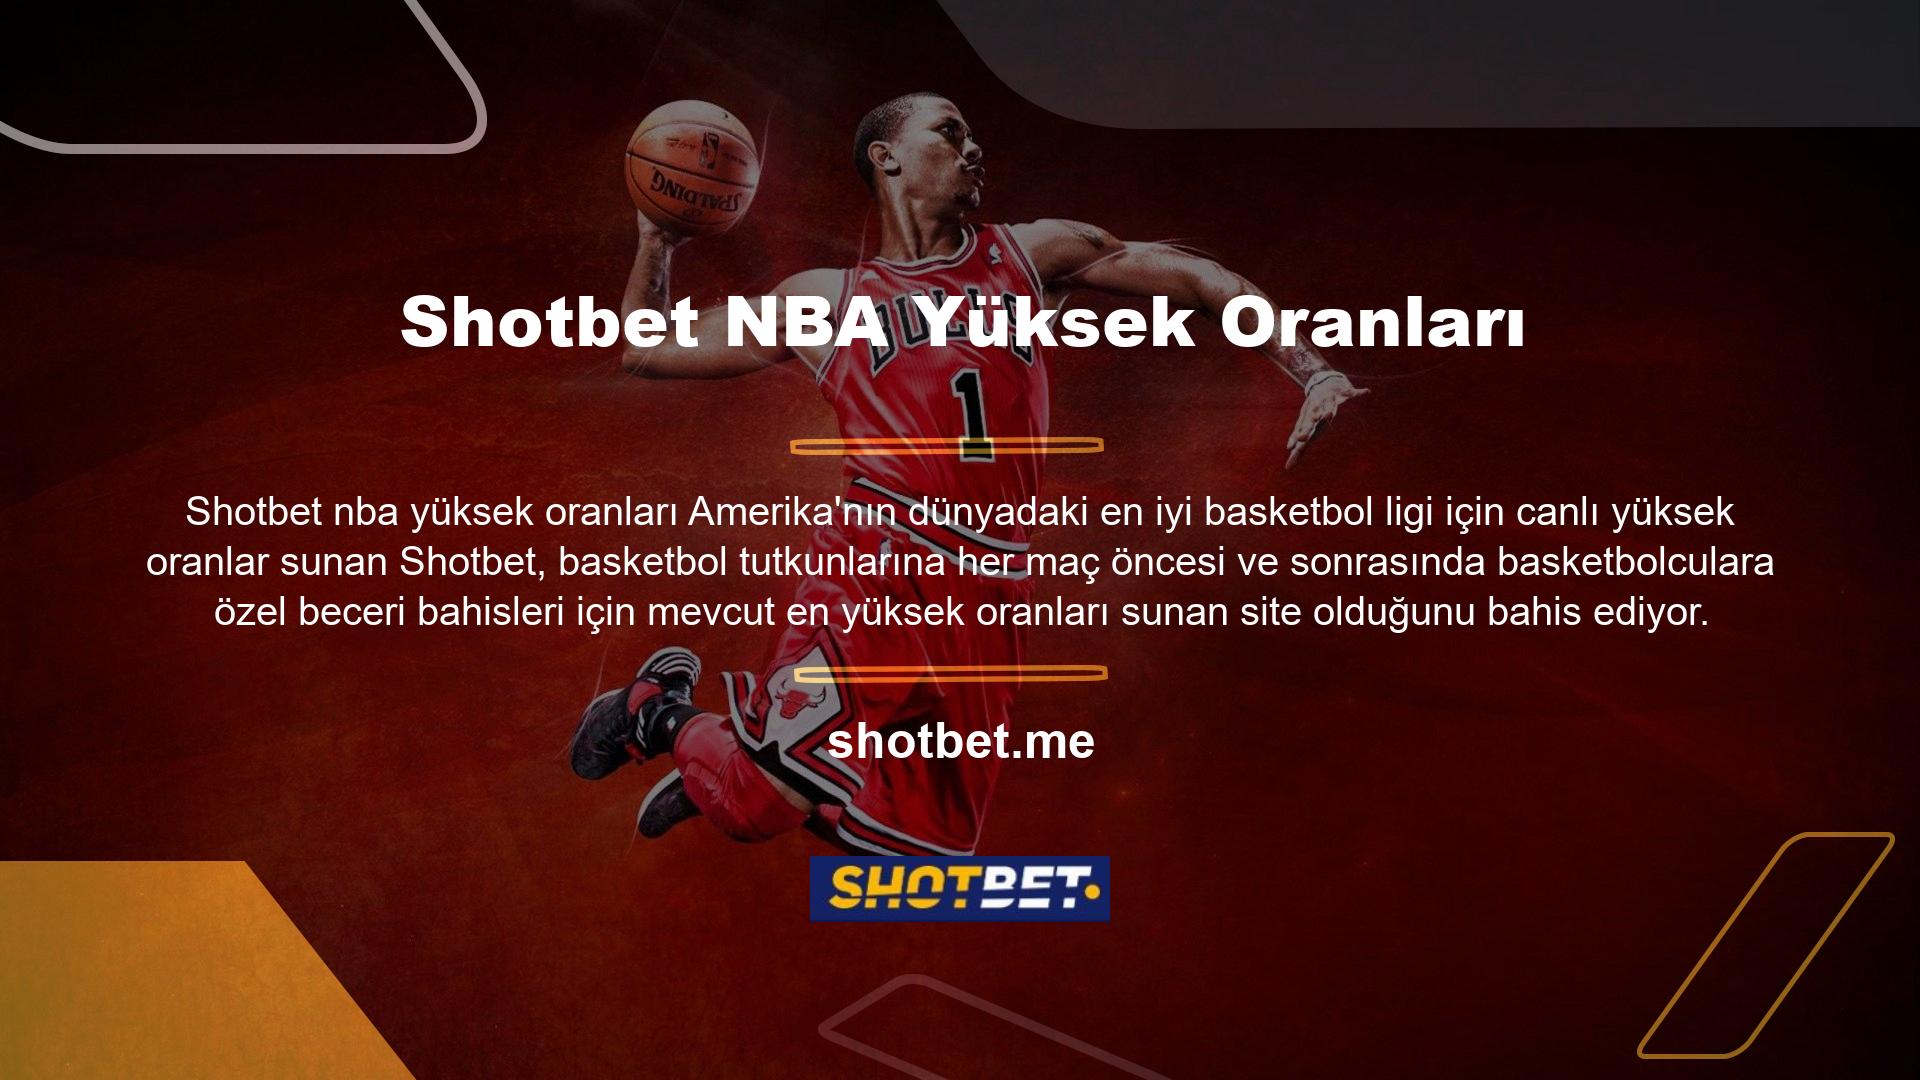 Hem basketbol hem de tüm kitlelere hitap eden bir site olan Shotbet, en iyi oranlı bahis özelliğini burada da ortaya koyuyor